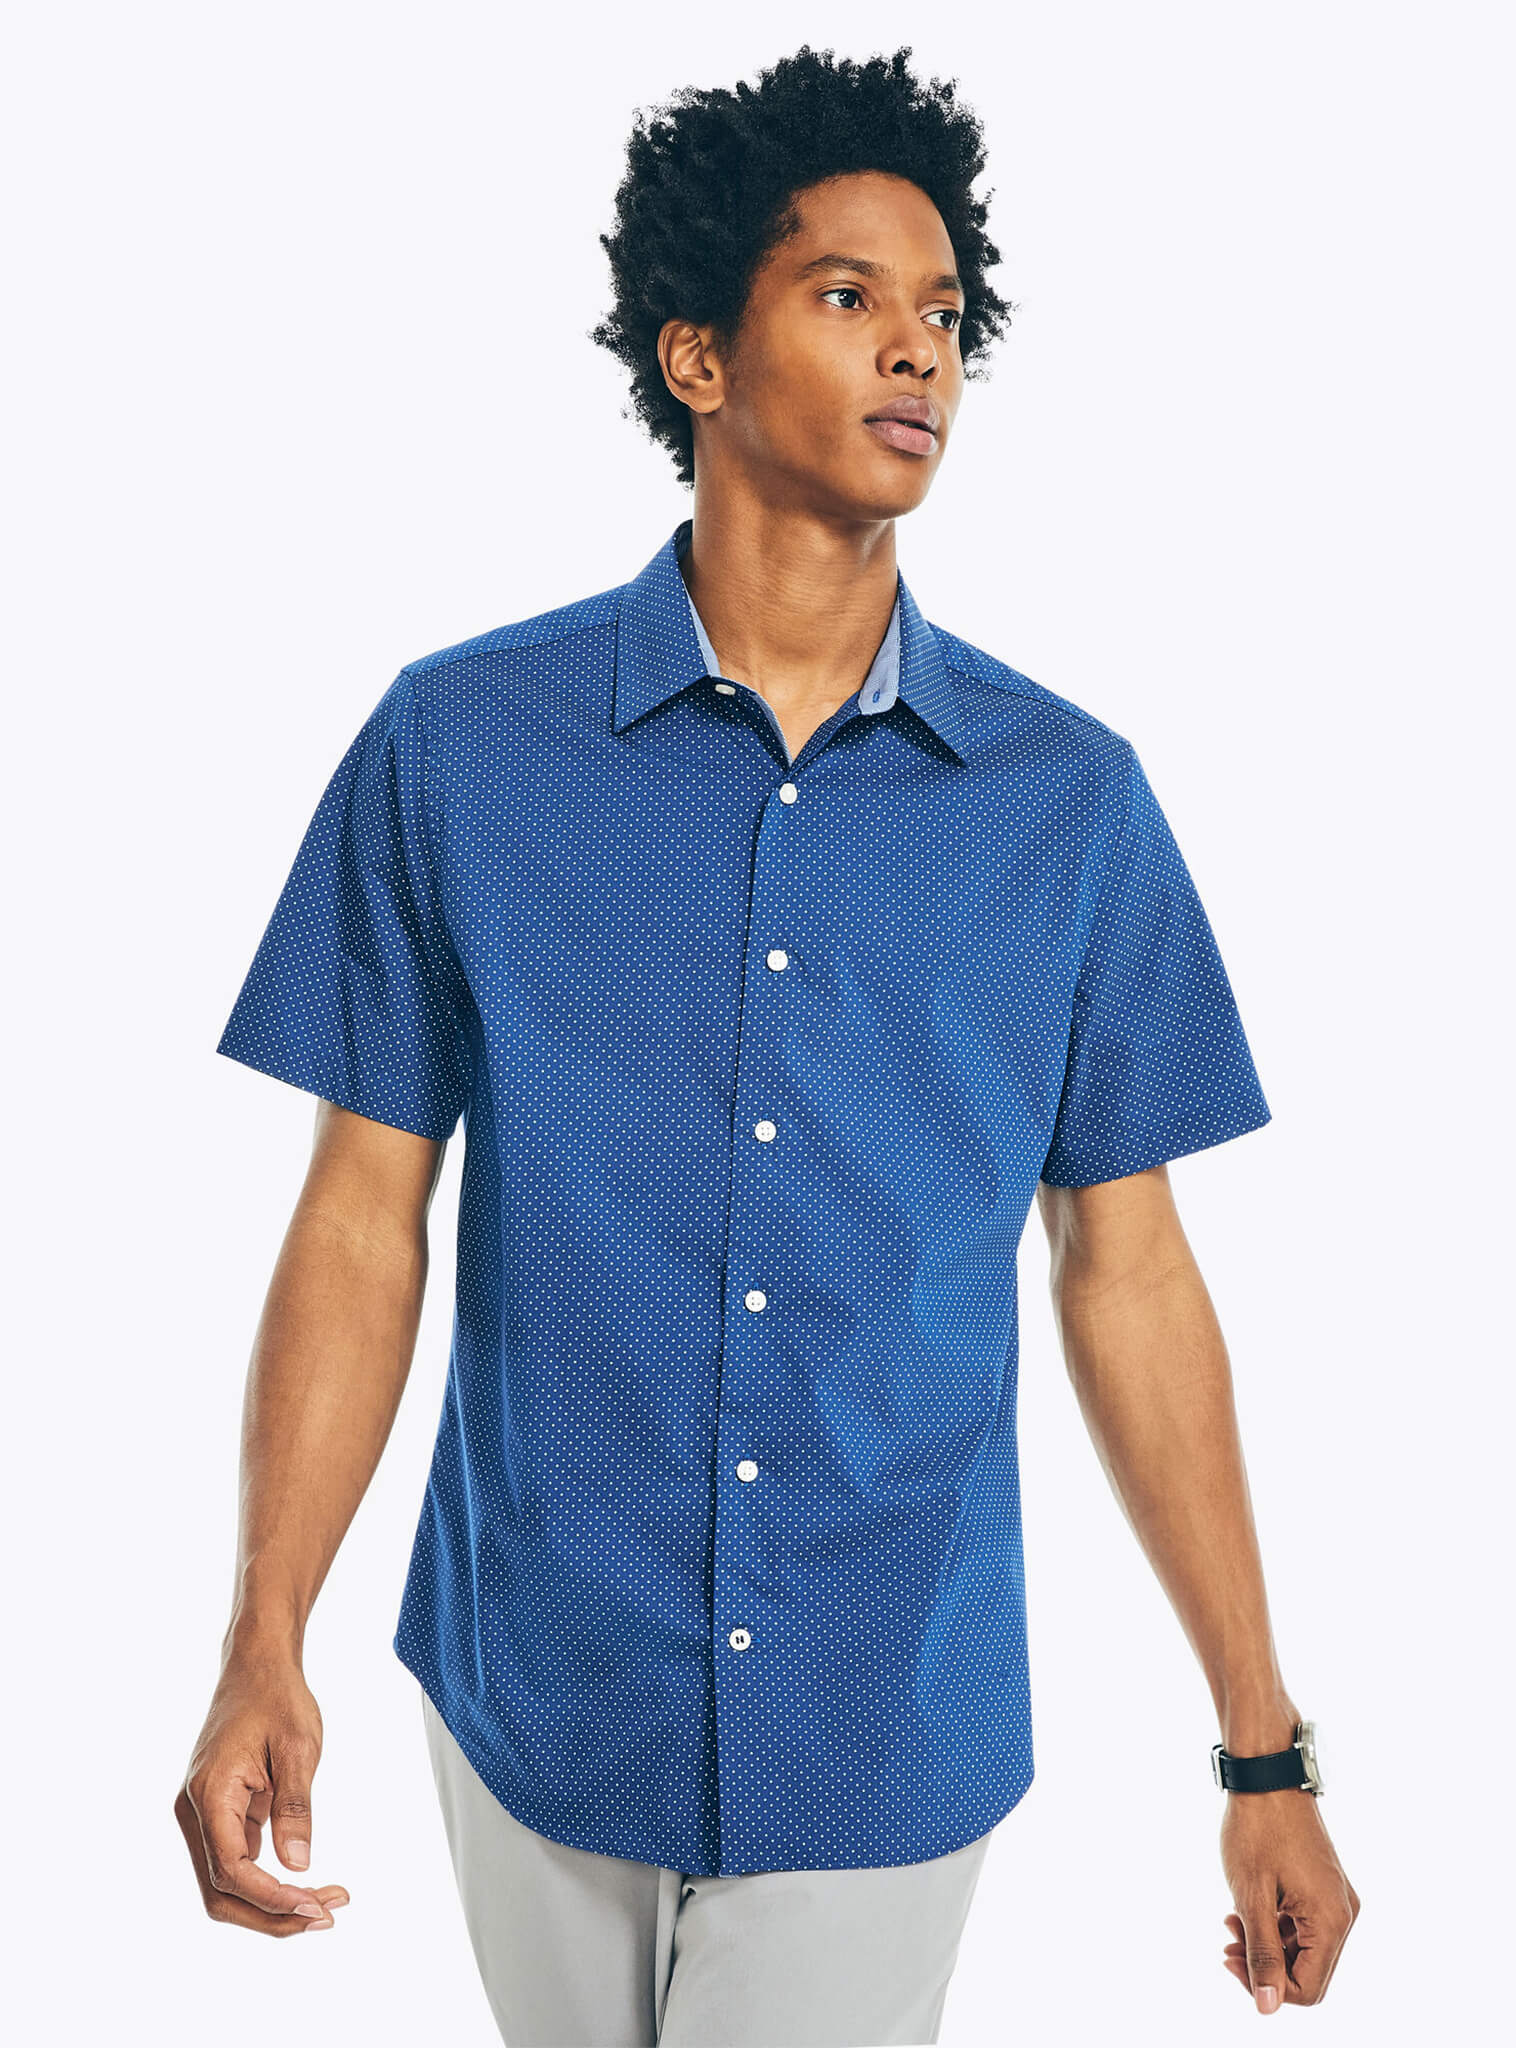 Camisa Manga Corta Print Puntos Azul Navtech Hombre